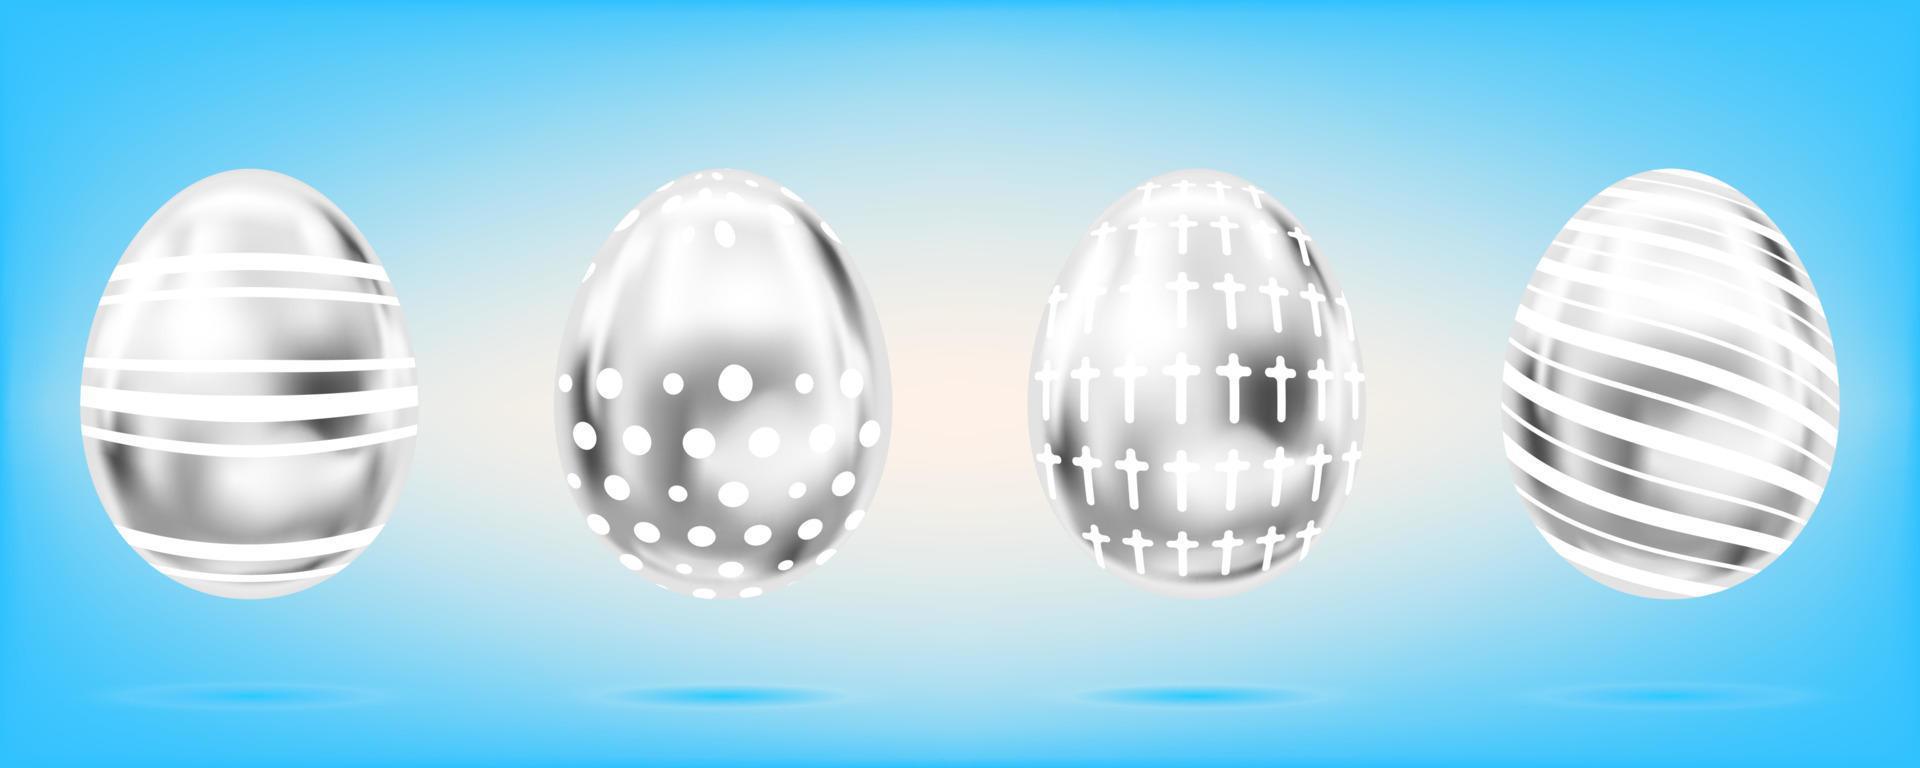 vier zilveren eieren op de hemelsblauwe achtergrond. geïsoleerde objecten voor Pasen decoratie. kruis, stippen en strepen versierd vector